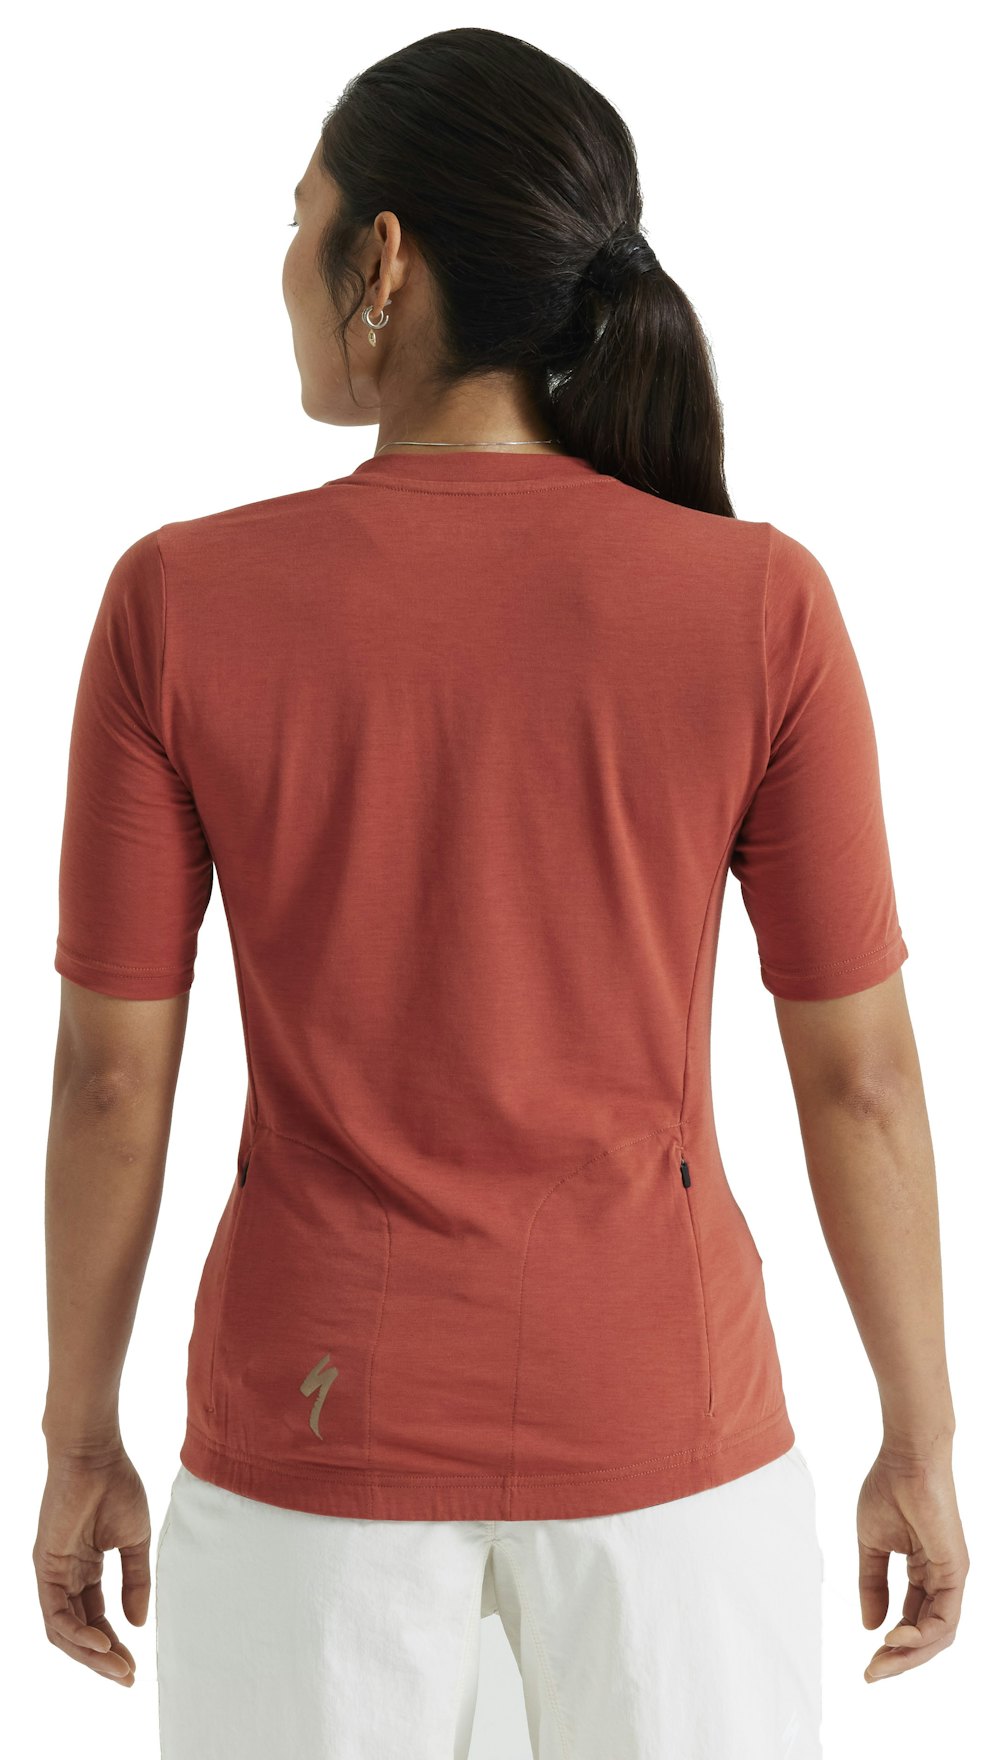 Specialized Women's ADV Short Sleeve Jersey